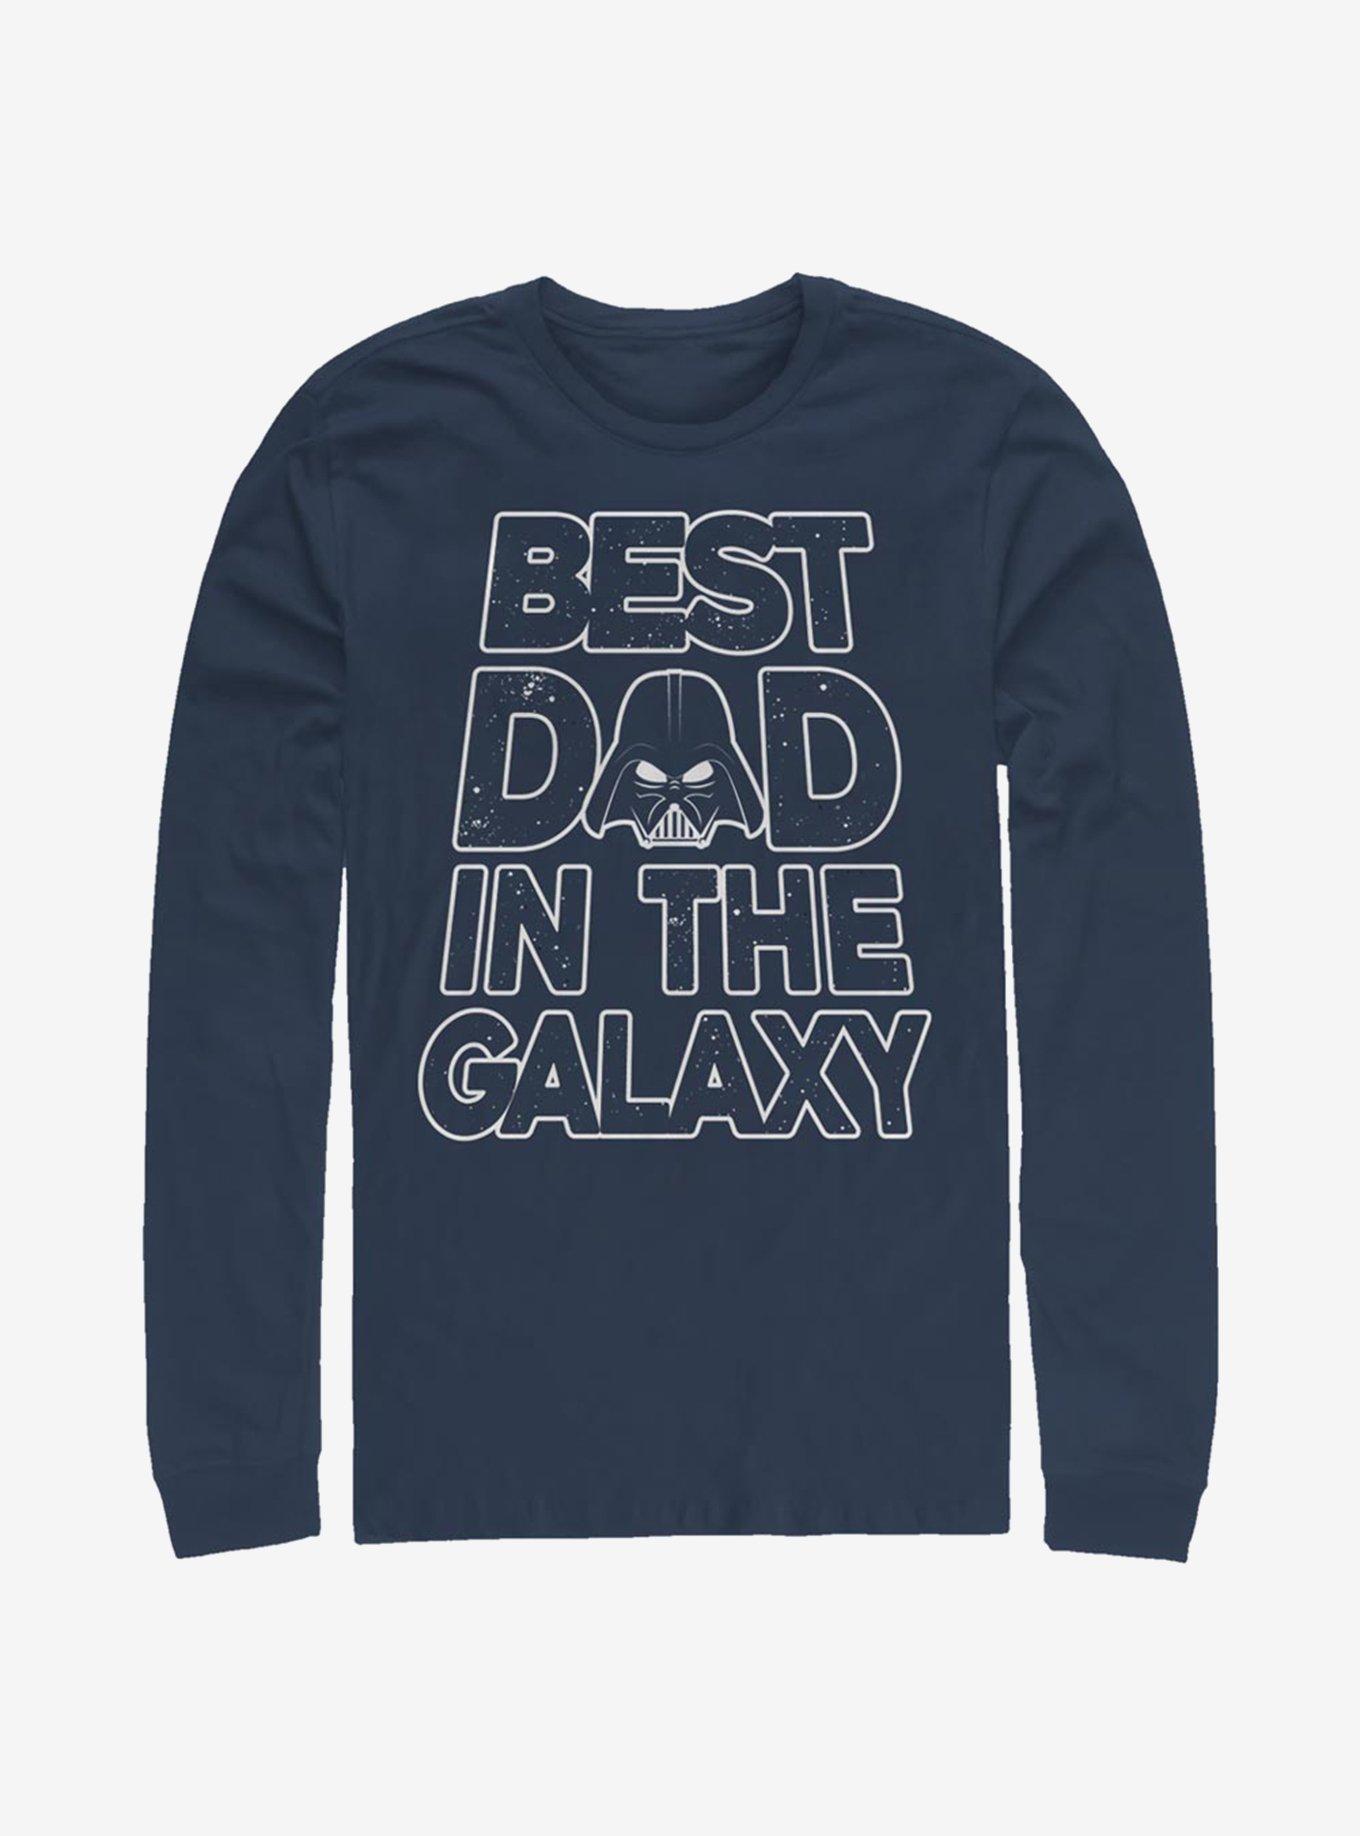 Star Wars Darth Vader Galaxy Dad Long-Sleeve T-Shirt